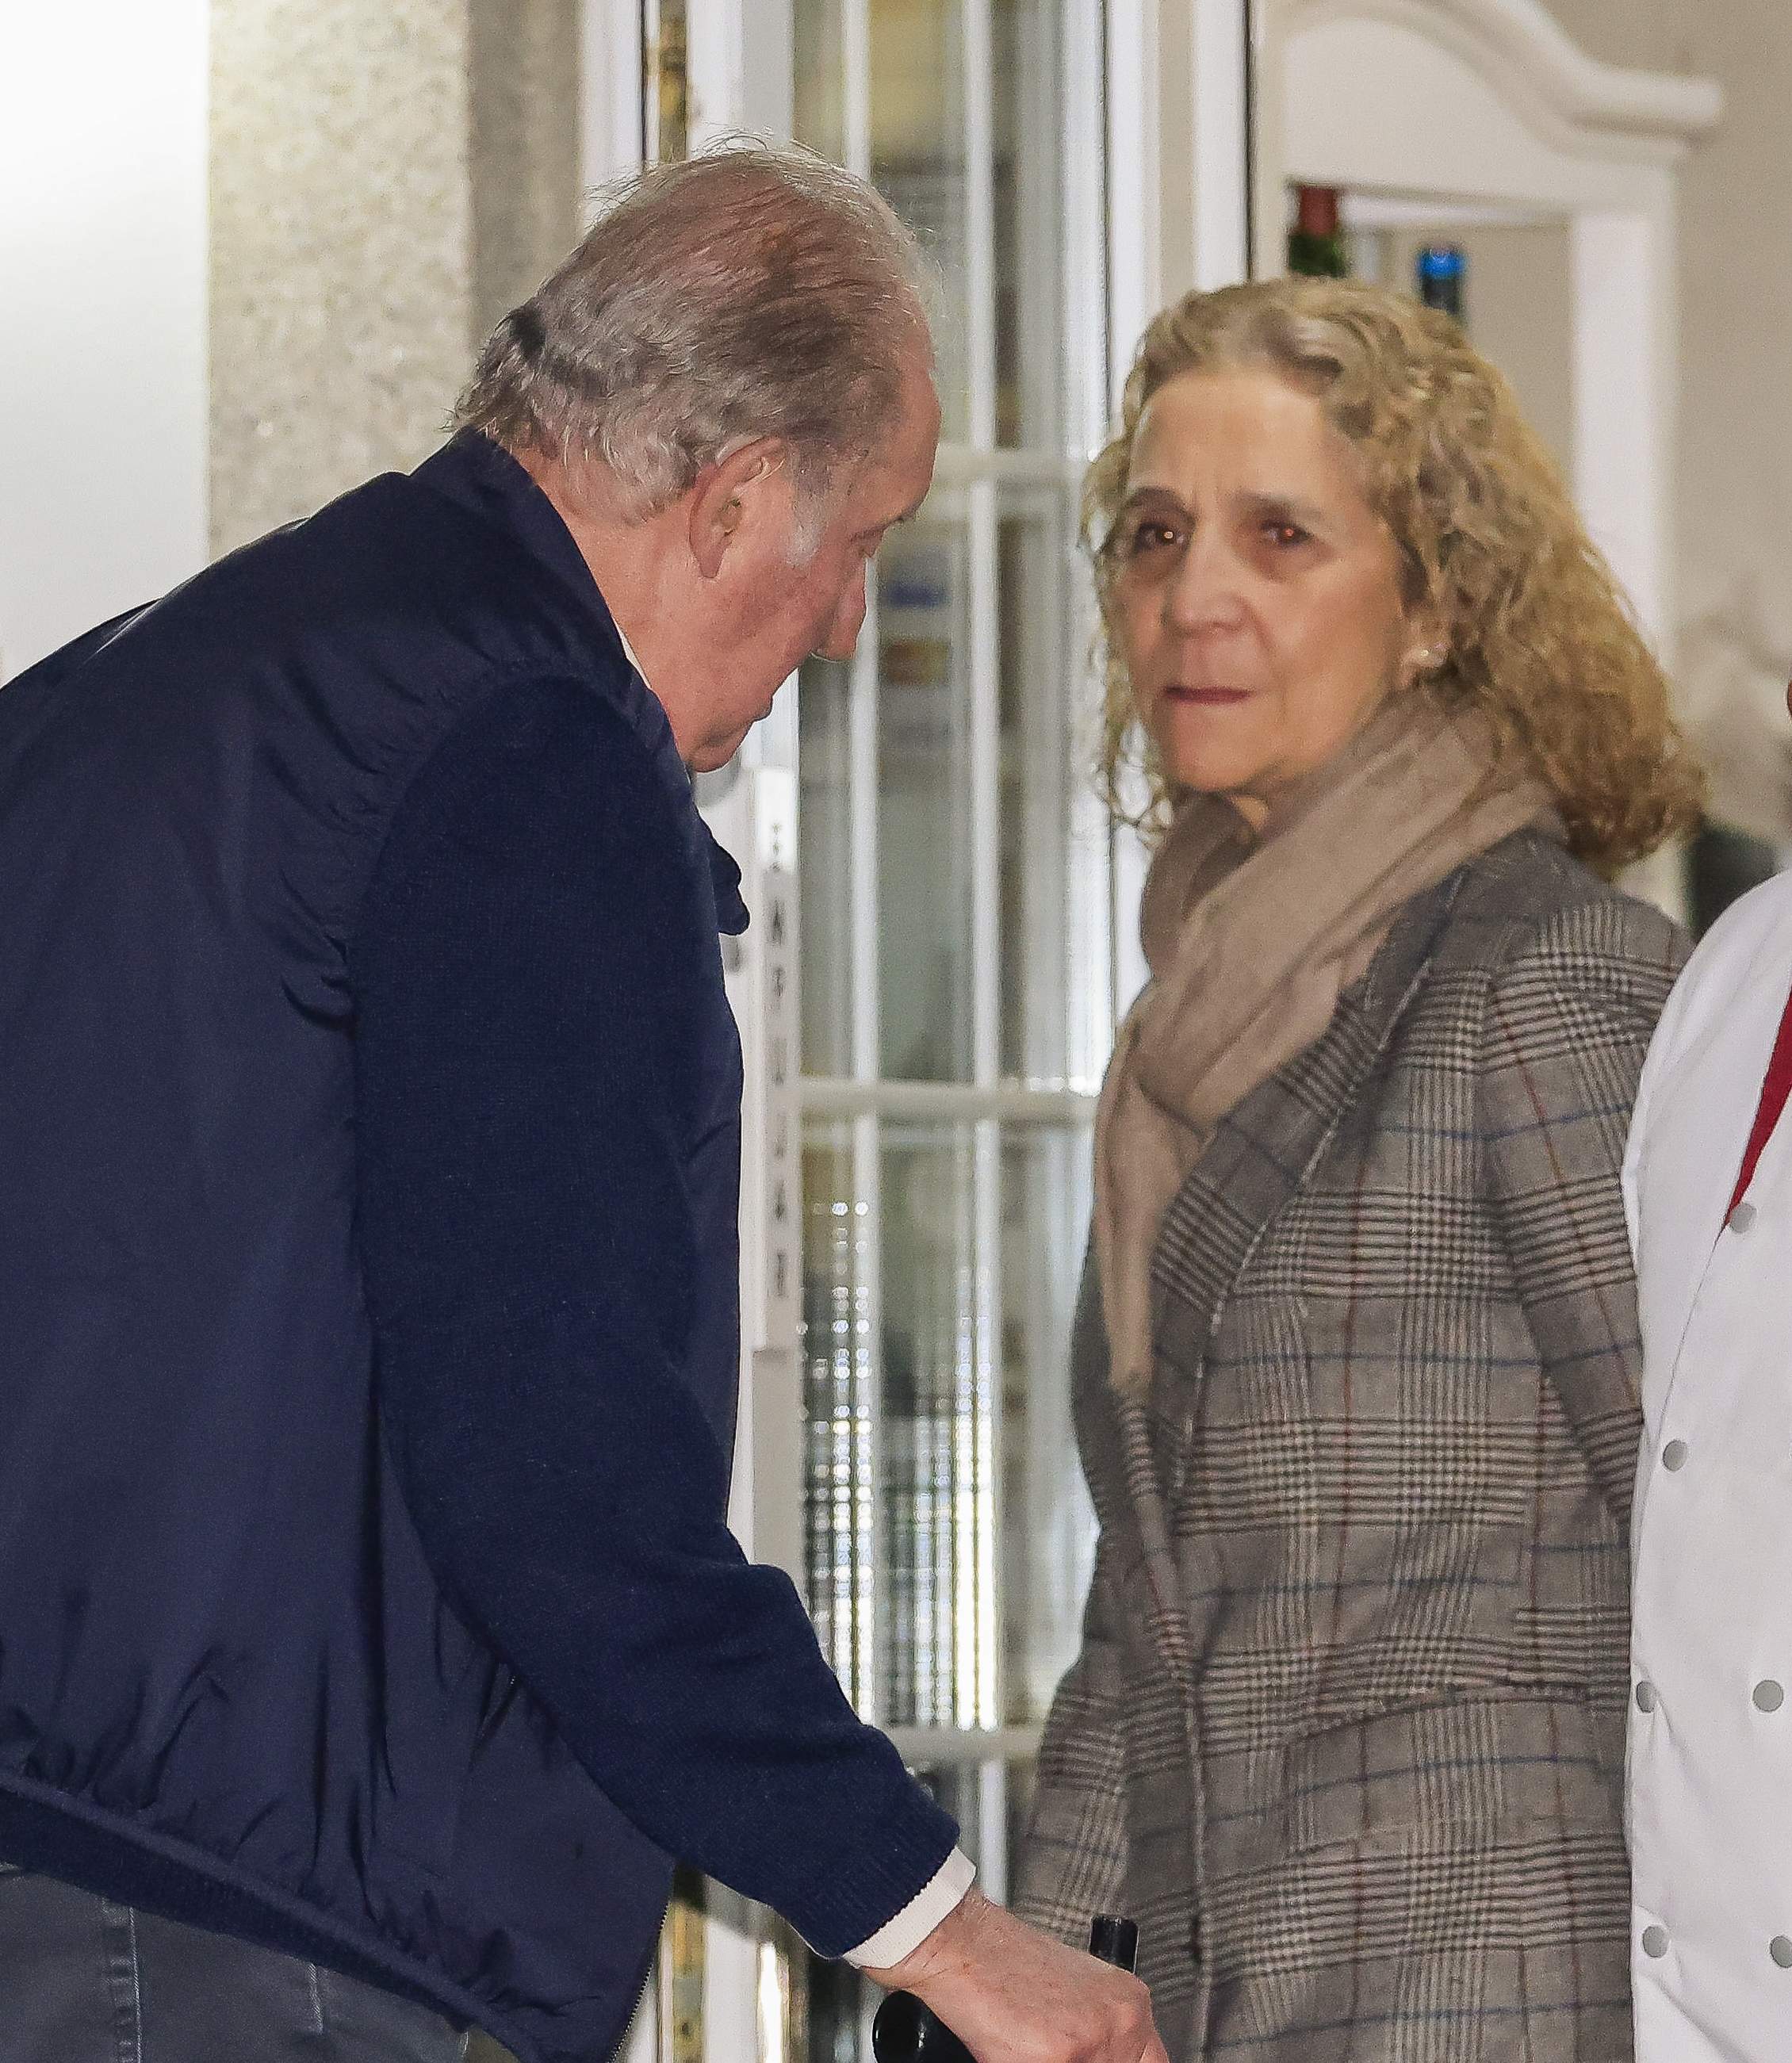 Cimera a Sanxenxo, Joan Carles i Elena discuteixen per l'herència, un problema